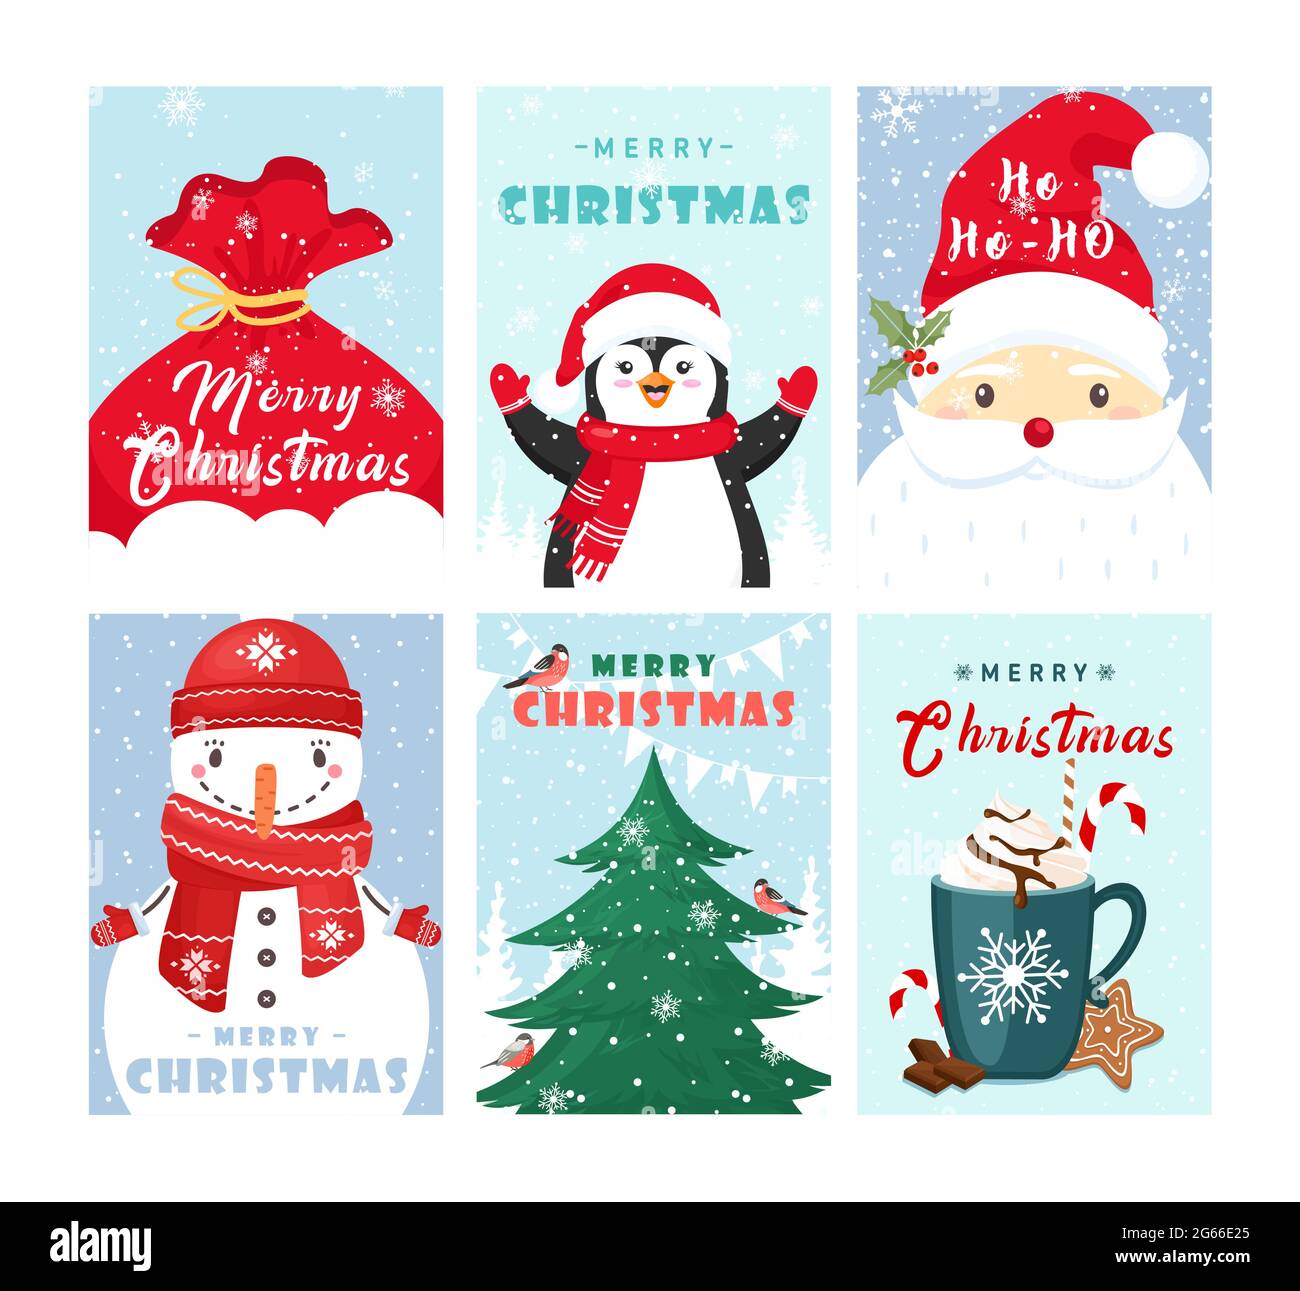 Conjunto de plantillas de tarjetas de felicitación de Navidad. Bonita colección de postales de vacaciones de invierno. Caricatura muñeco de nieve, pingüino y Santa con Feliz Navidad deseos Ilustración del Vector